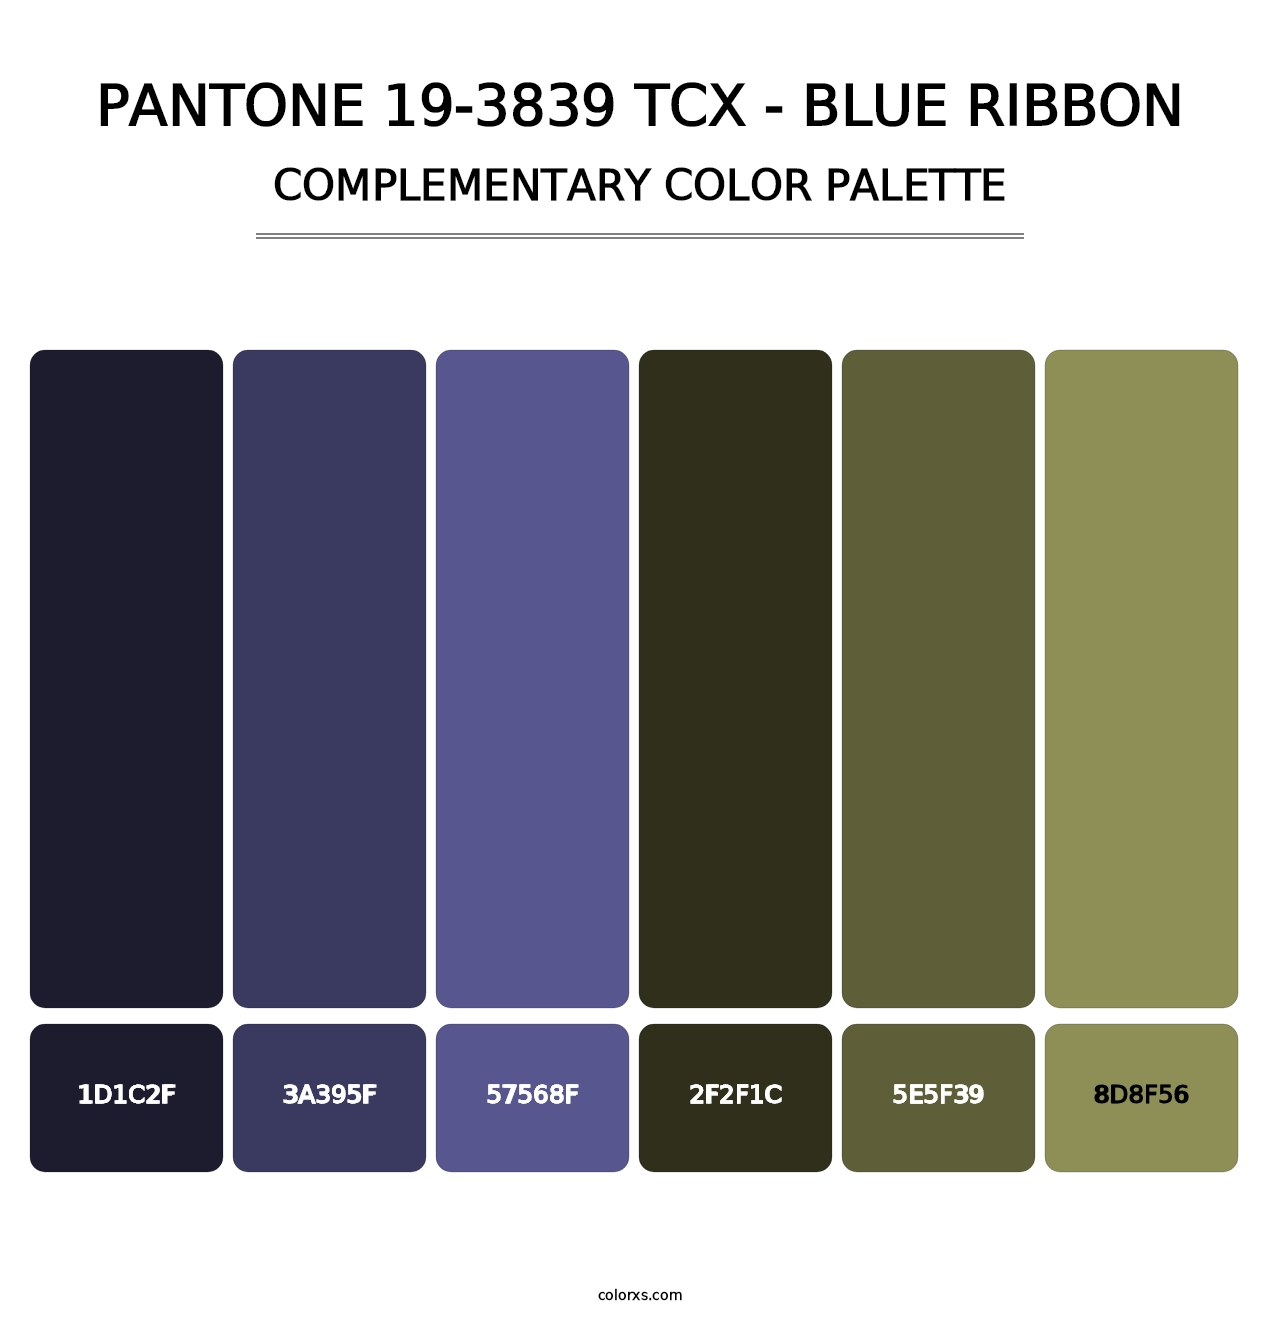 PANTONE 19-3839 TCX - Blue Ribbon - Complementary Color Palette